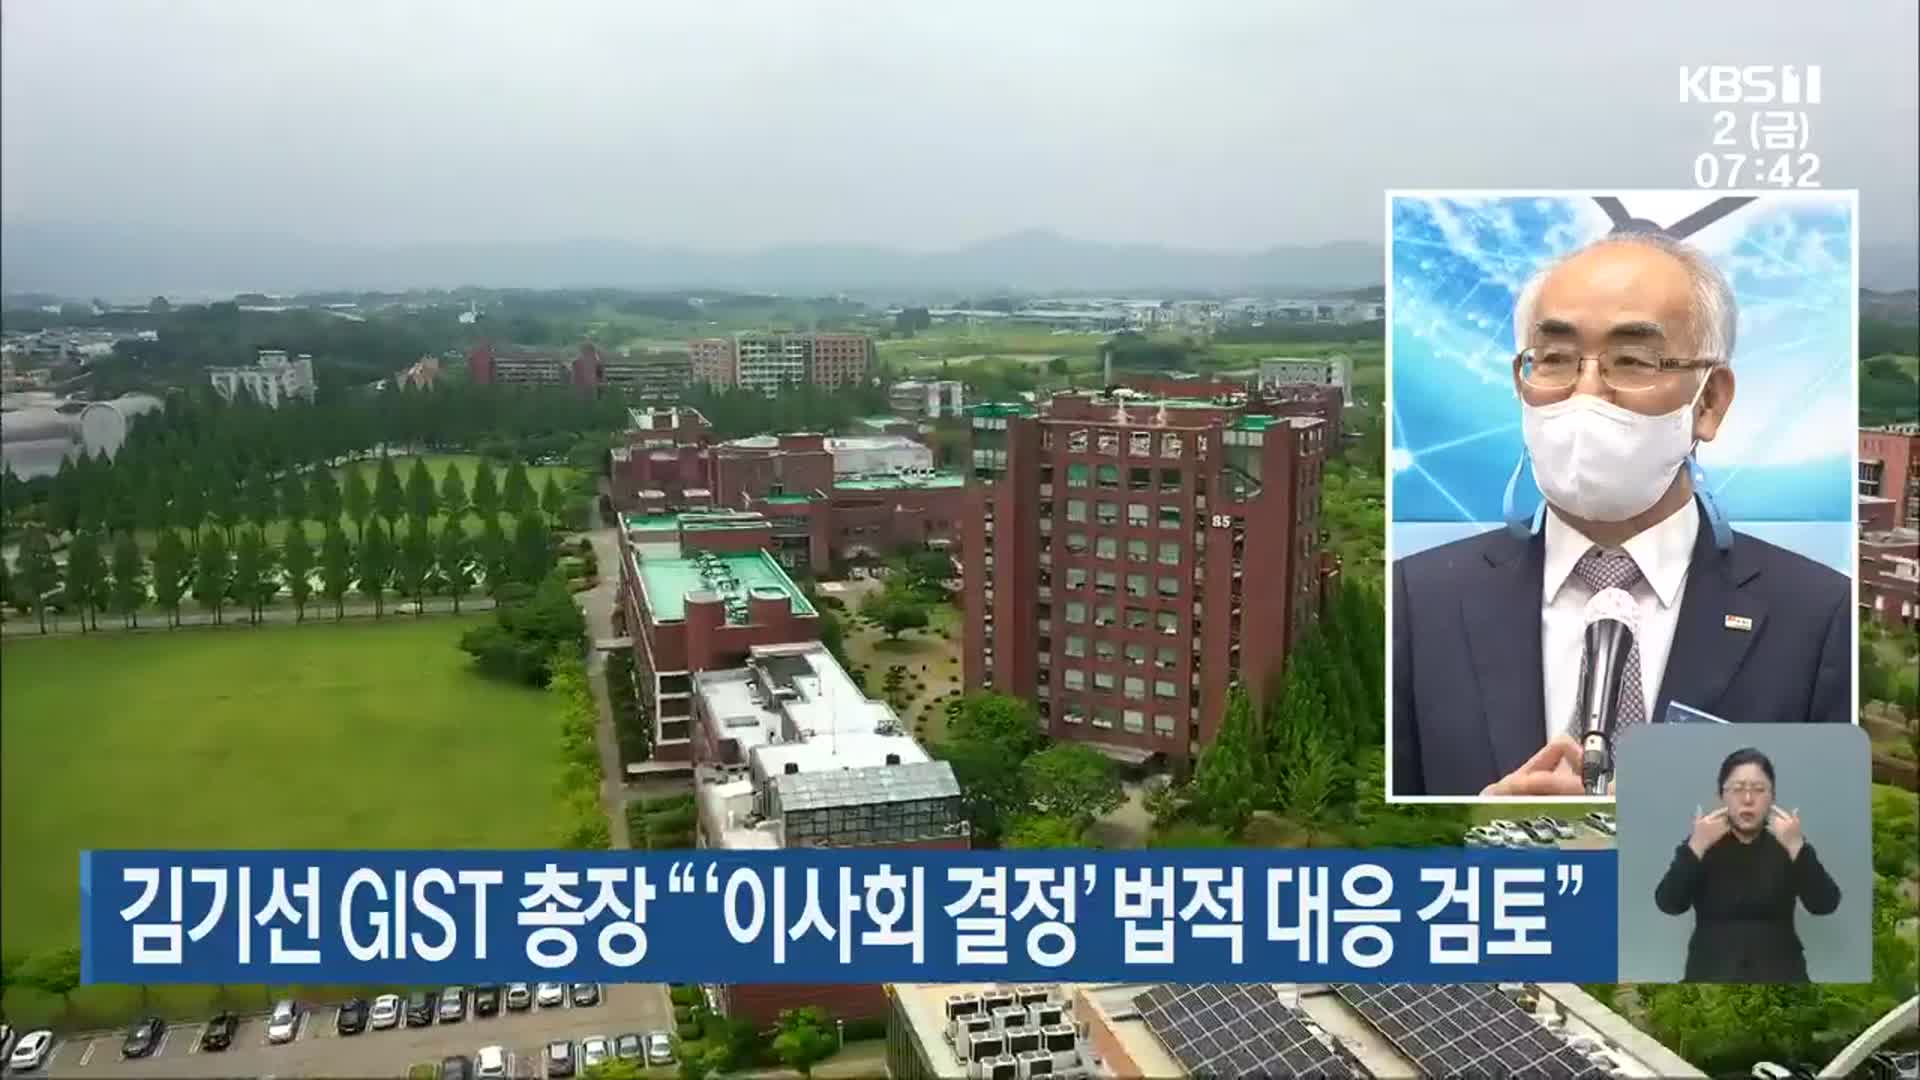 김기선 GIST 총장 “‘이사회 결정’ 법적 대응 검토”